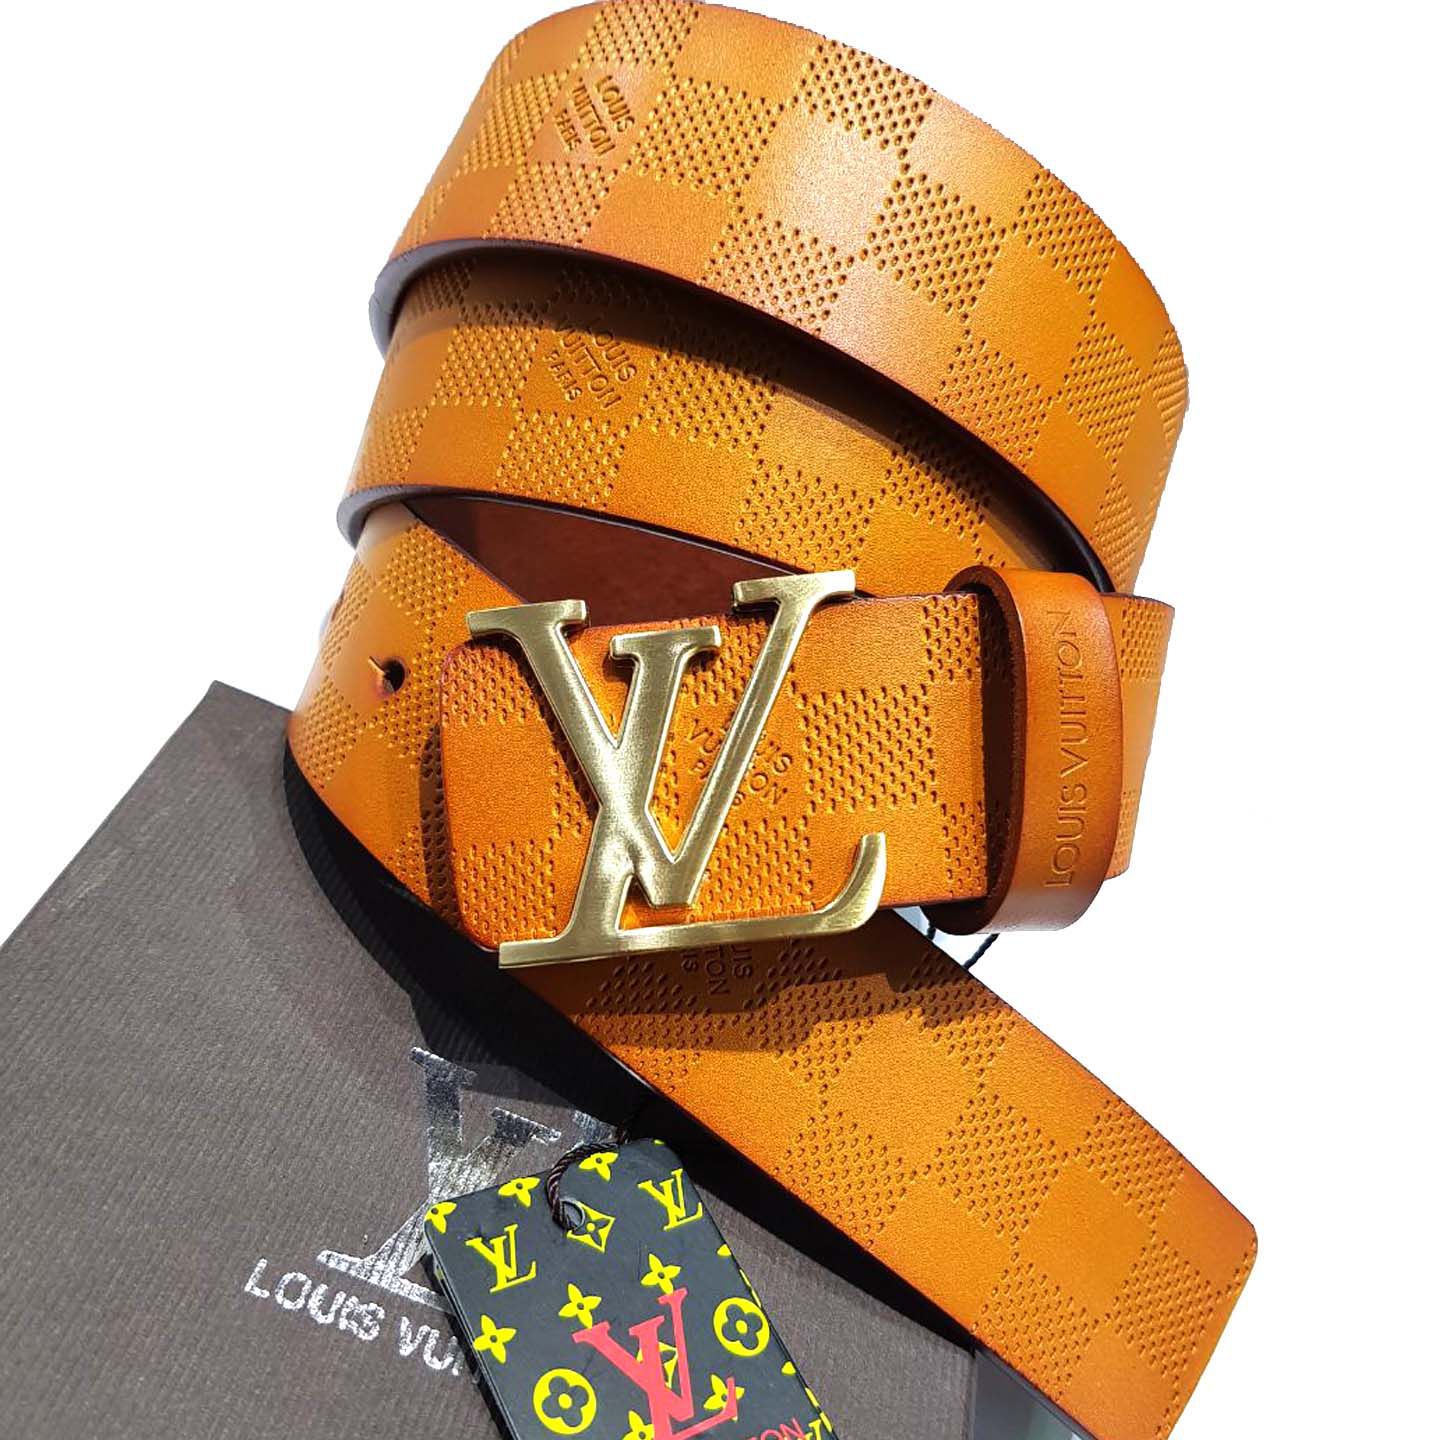 Buy Louis Vuitton Belt Online In India -  India